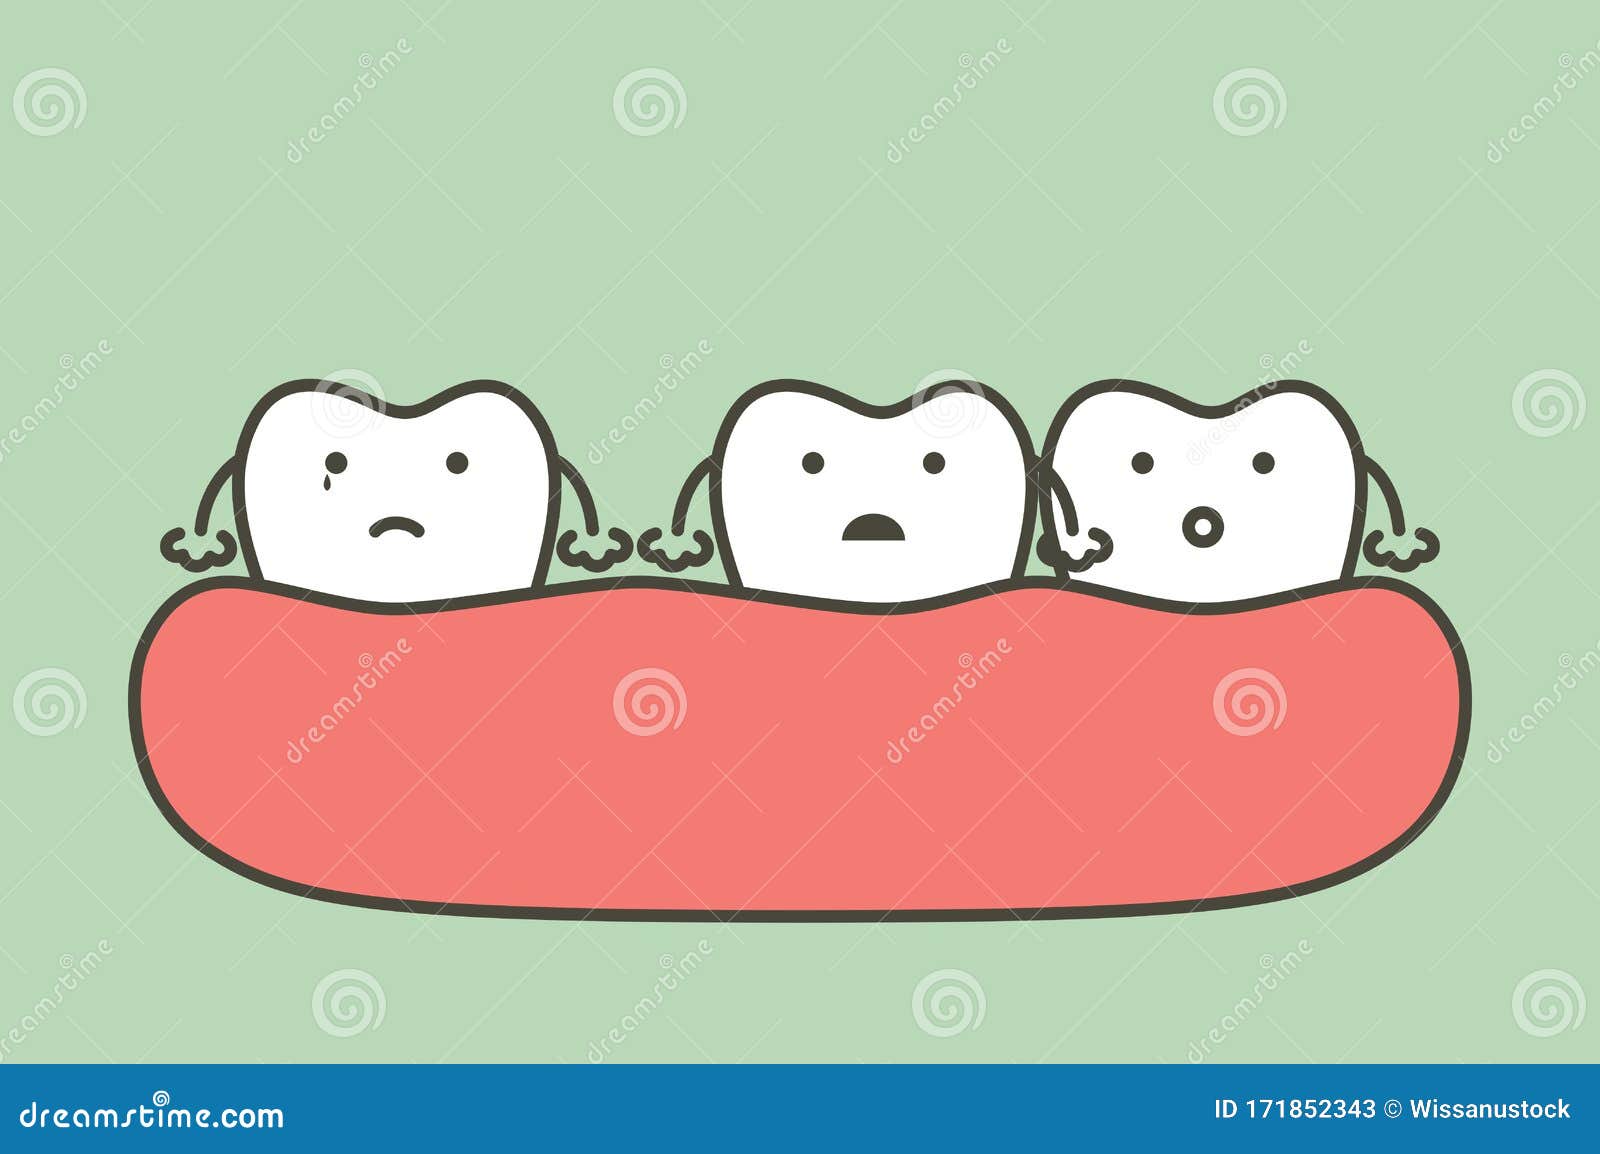 Teeth Gap Cartoon Stock Illustrations – 111 Teeth Gap Cartoon Stock  Illustrations, Vectors & Clipart - Dreamstime